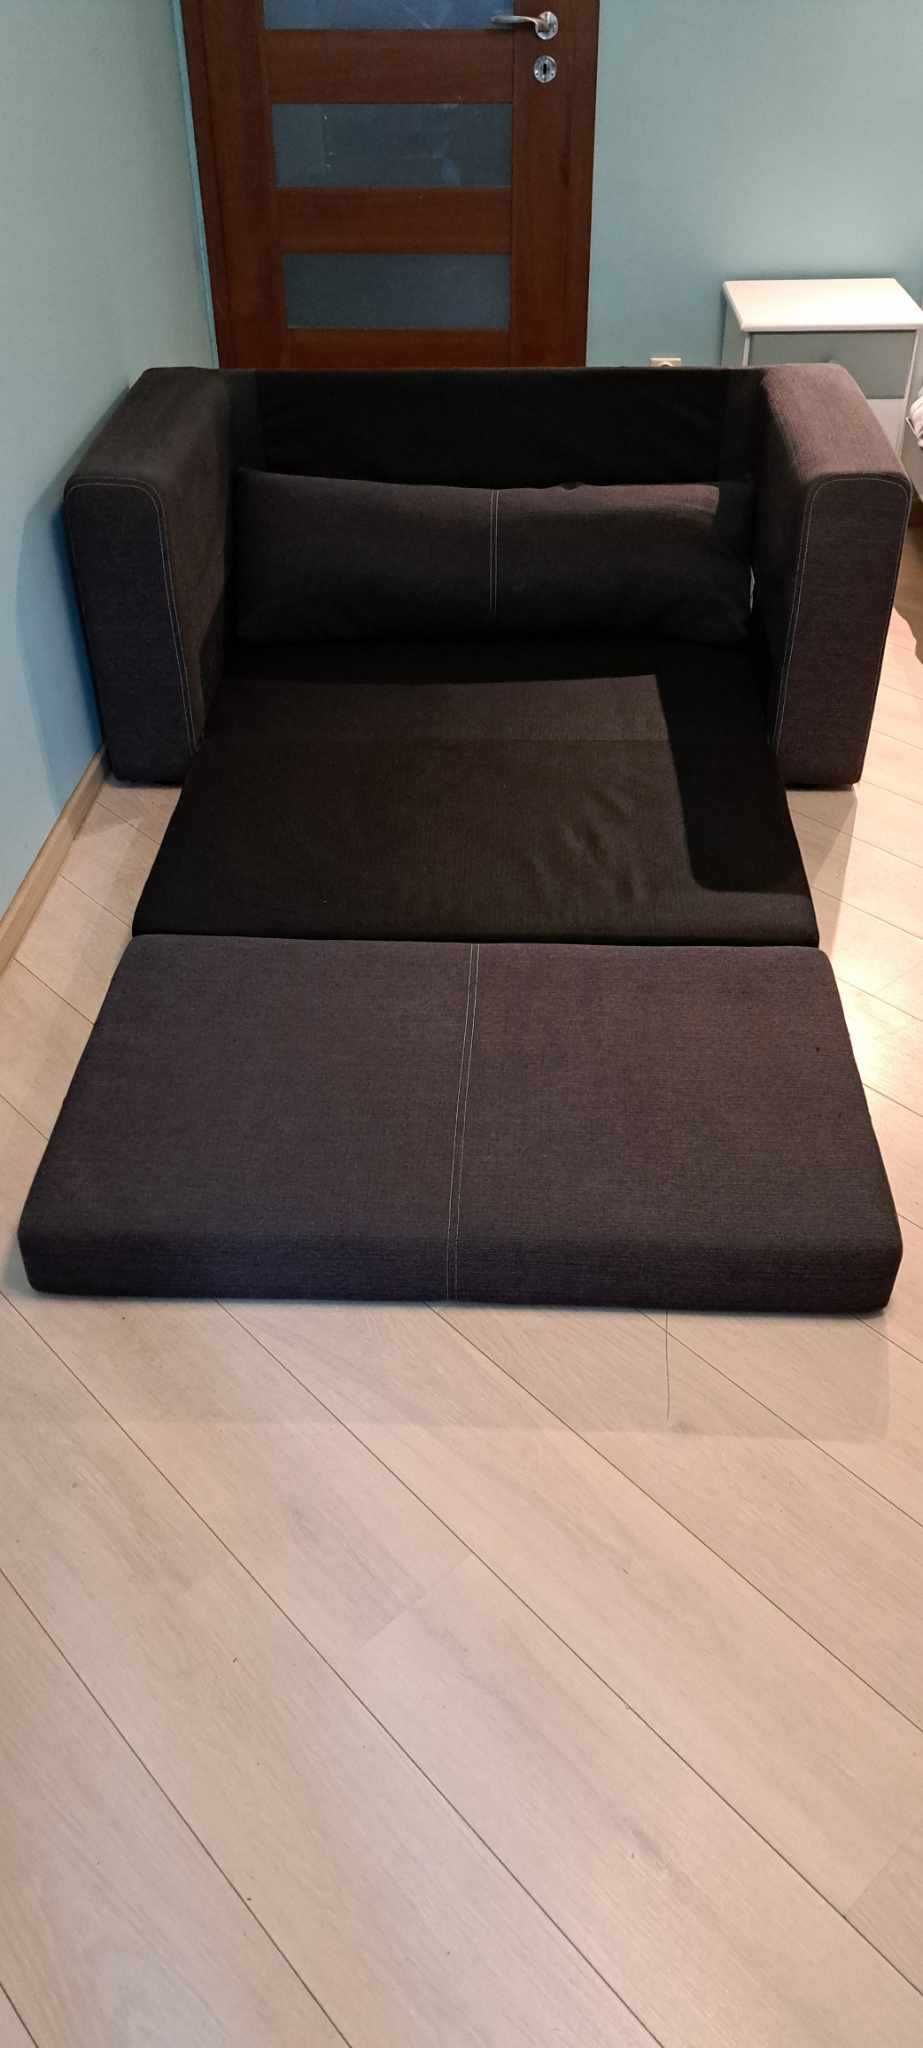 ASKEBY sofa 2-osobowa rozkładana - Marka IKEA